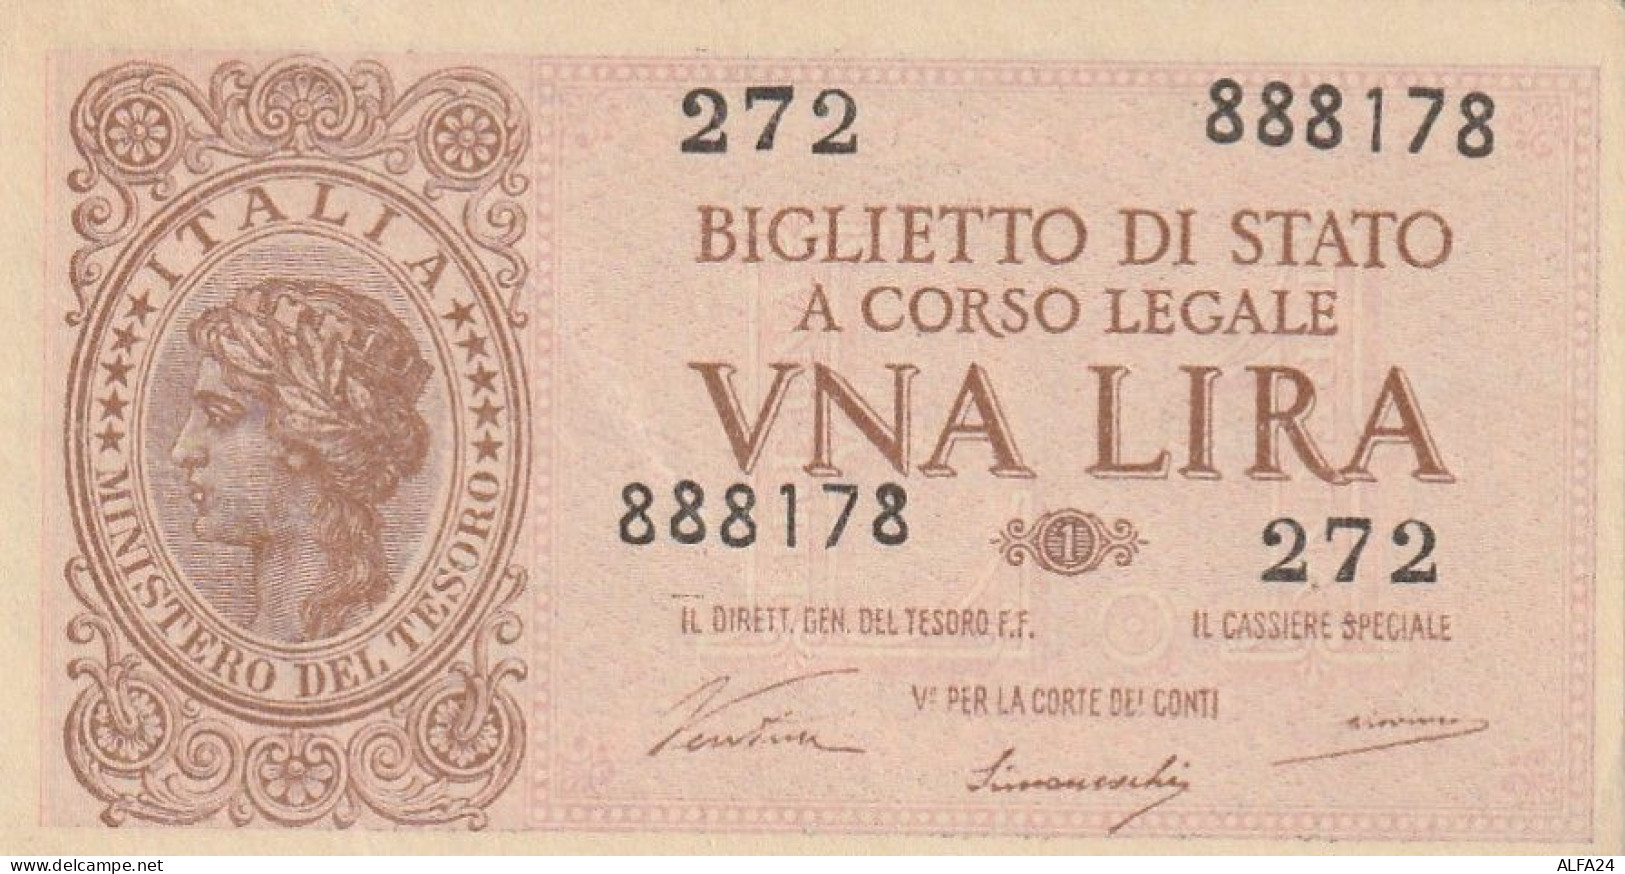 BANCONOTA BIGLIETTO DI STATO ITALIA 1 LIRA EF (RY7383 - Italia – 1 Lira